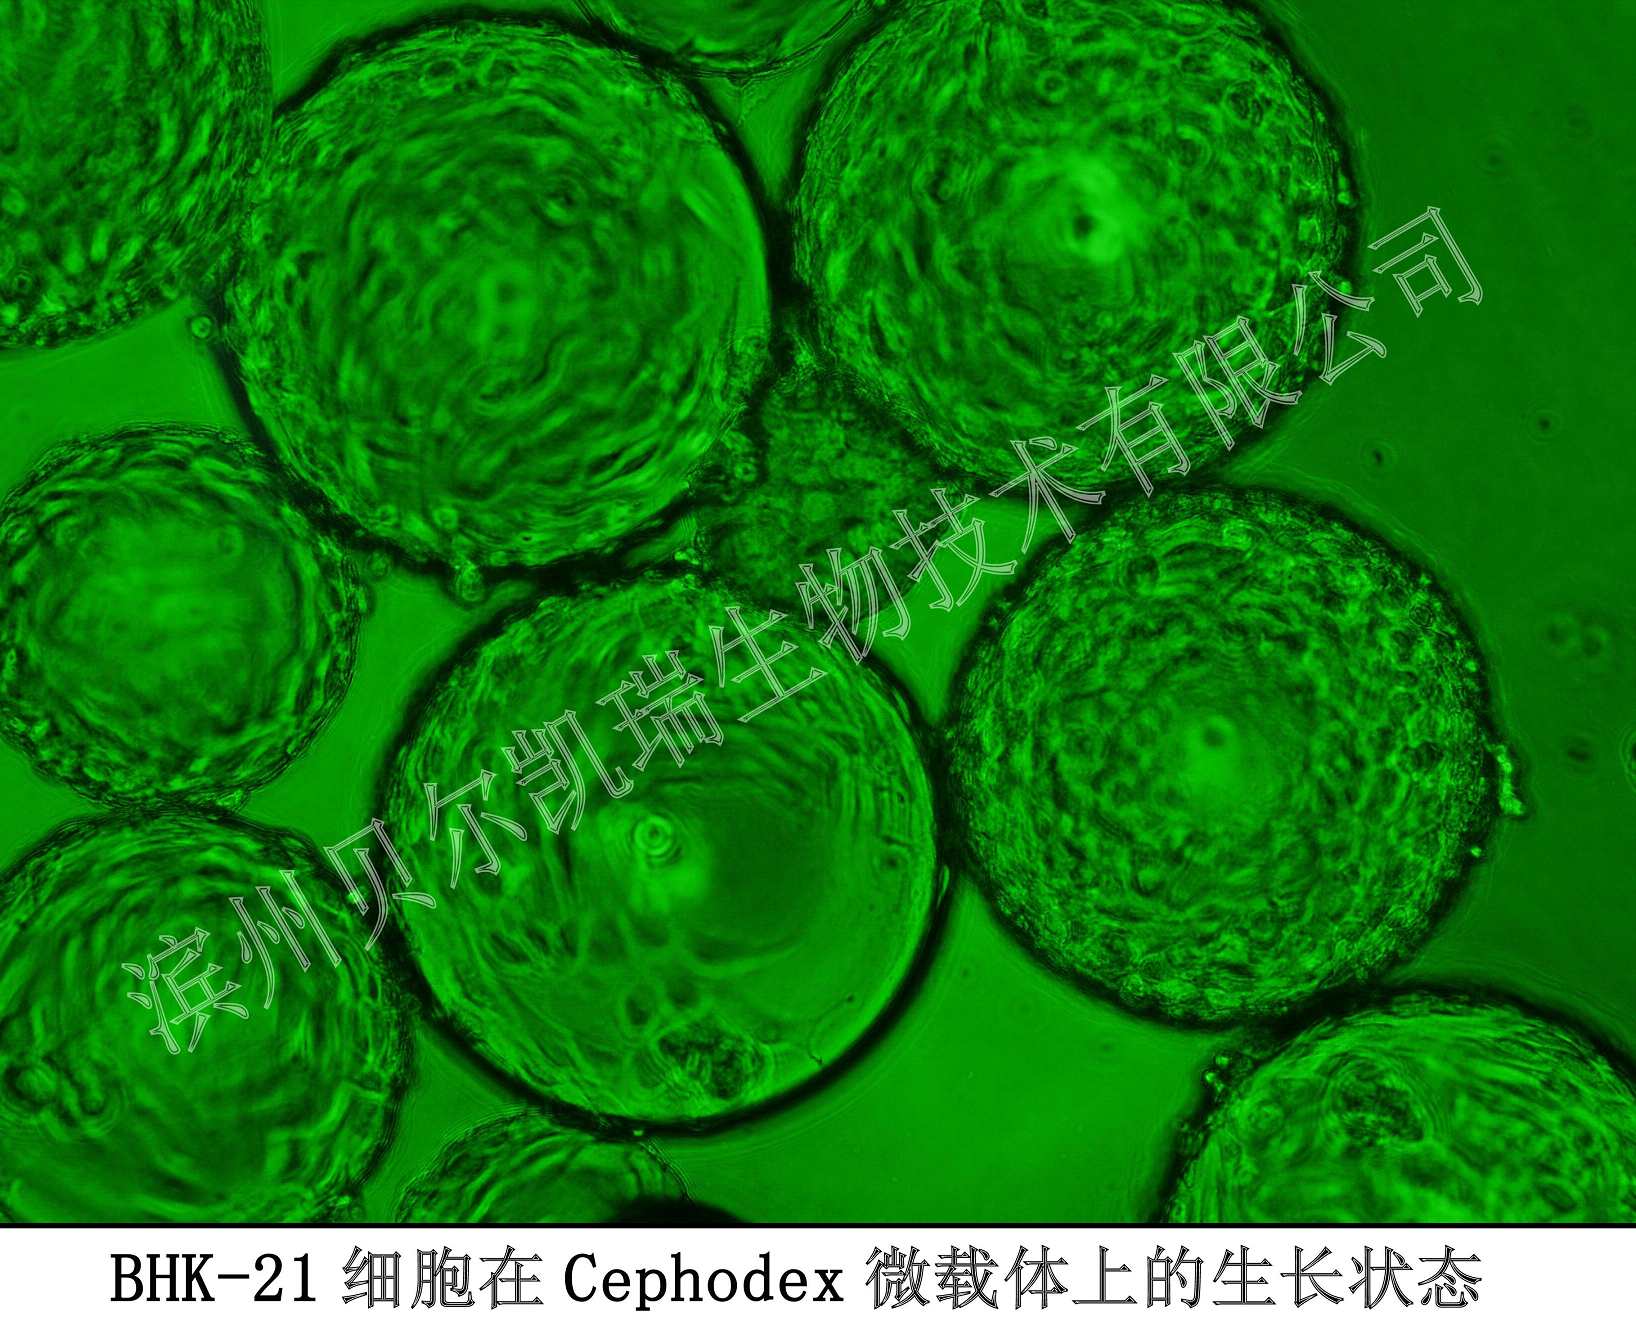 BHK-21细胞在Cephodex微载体上的生长状态